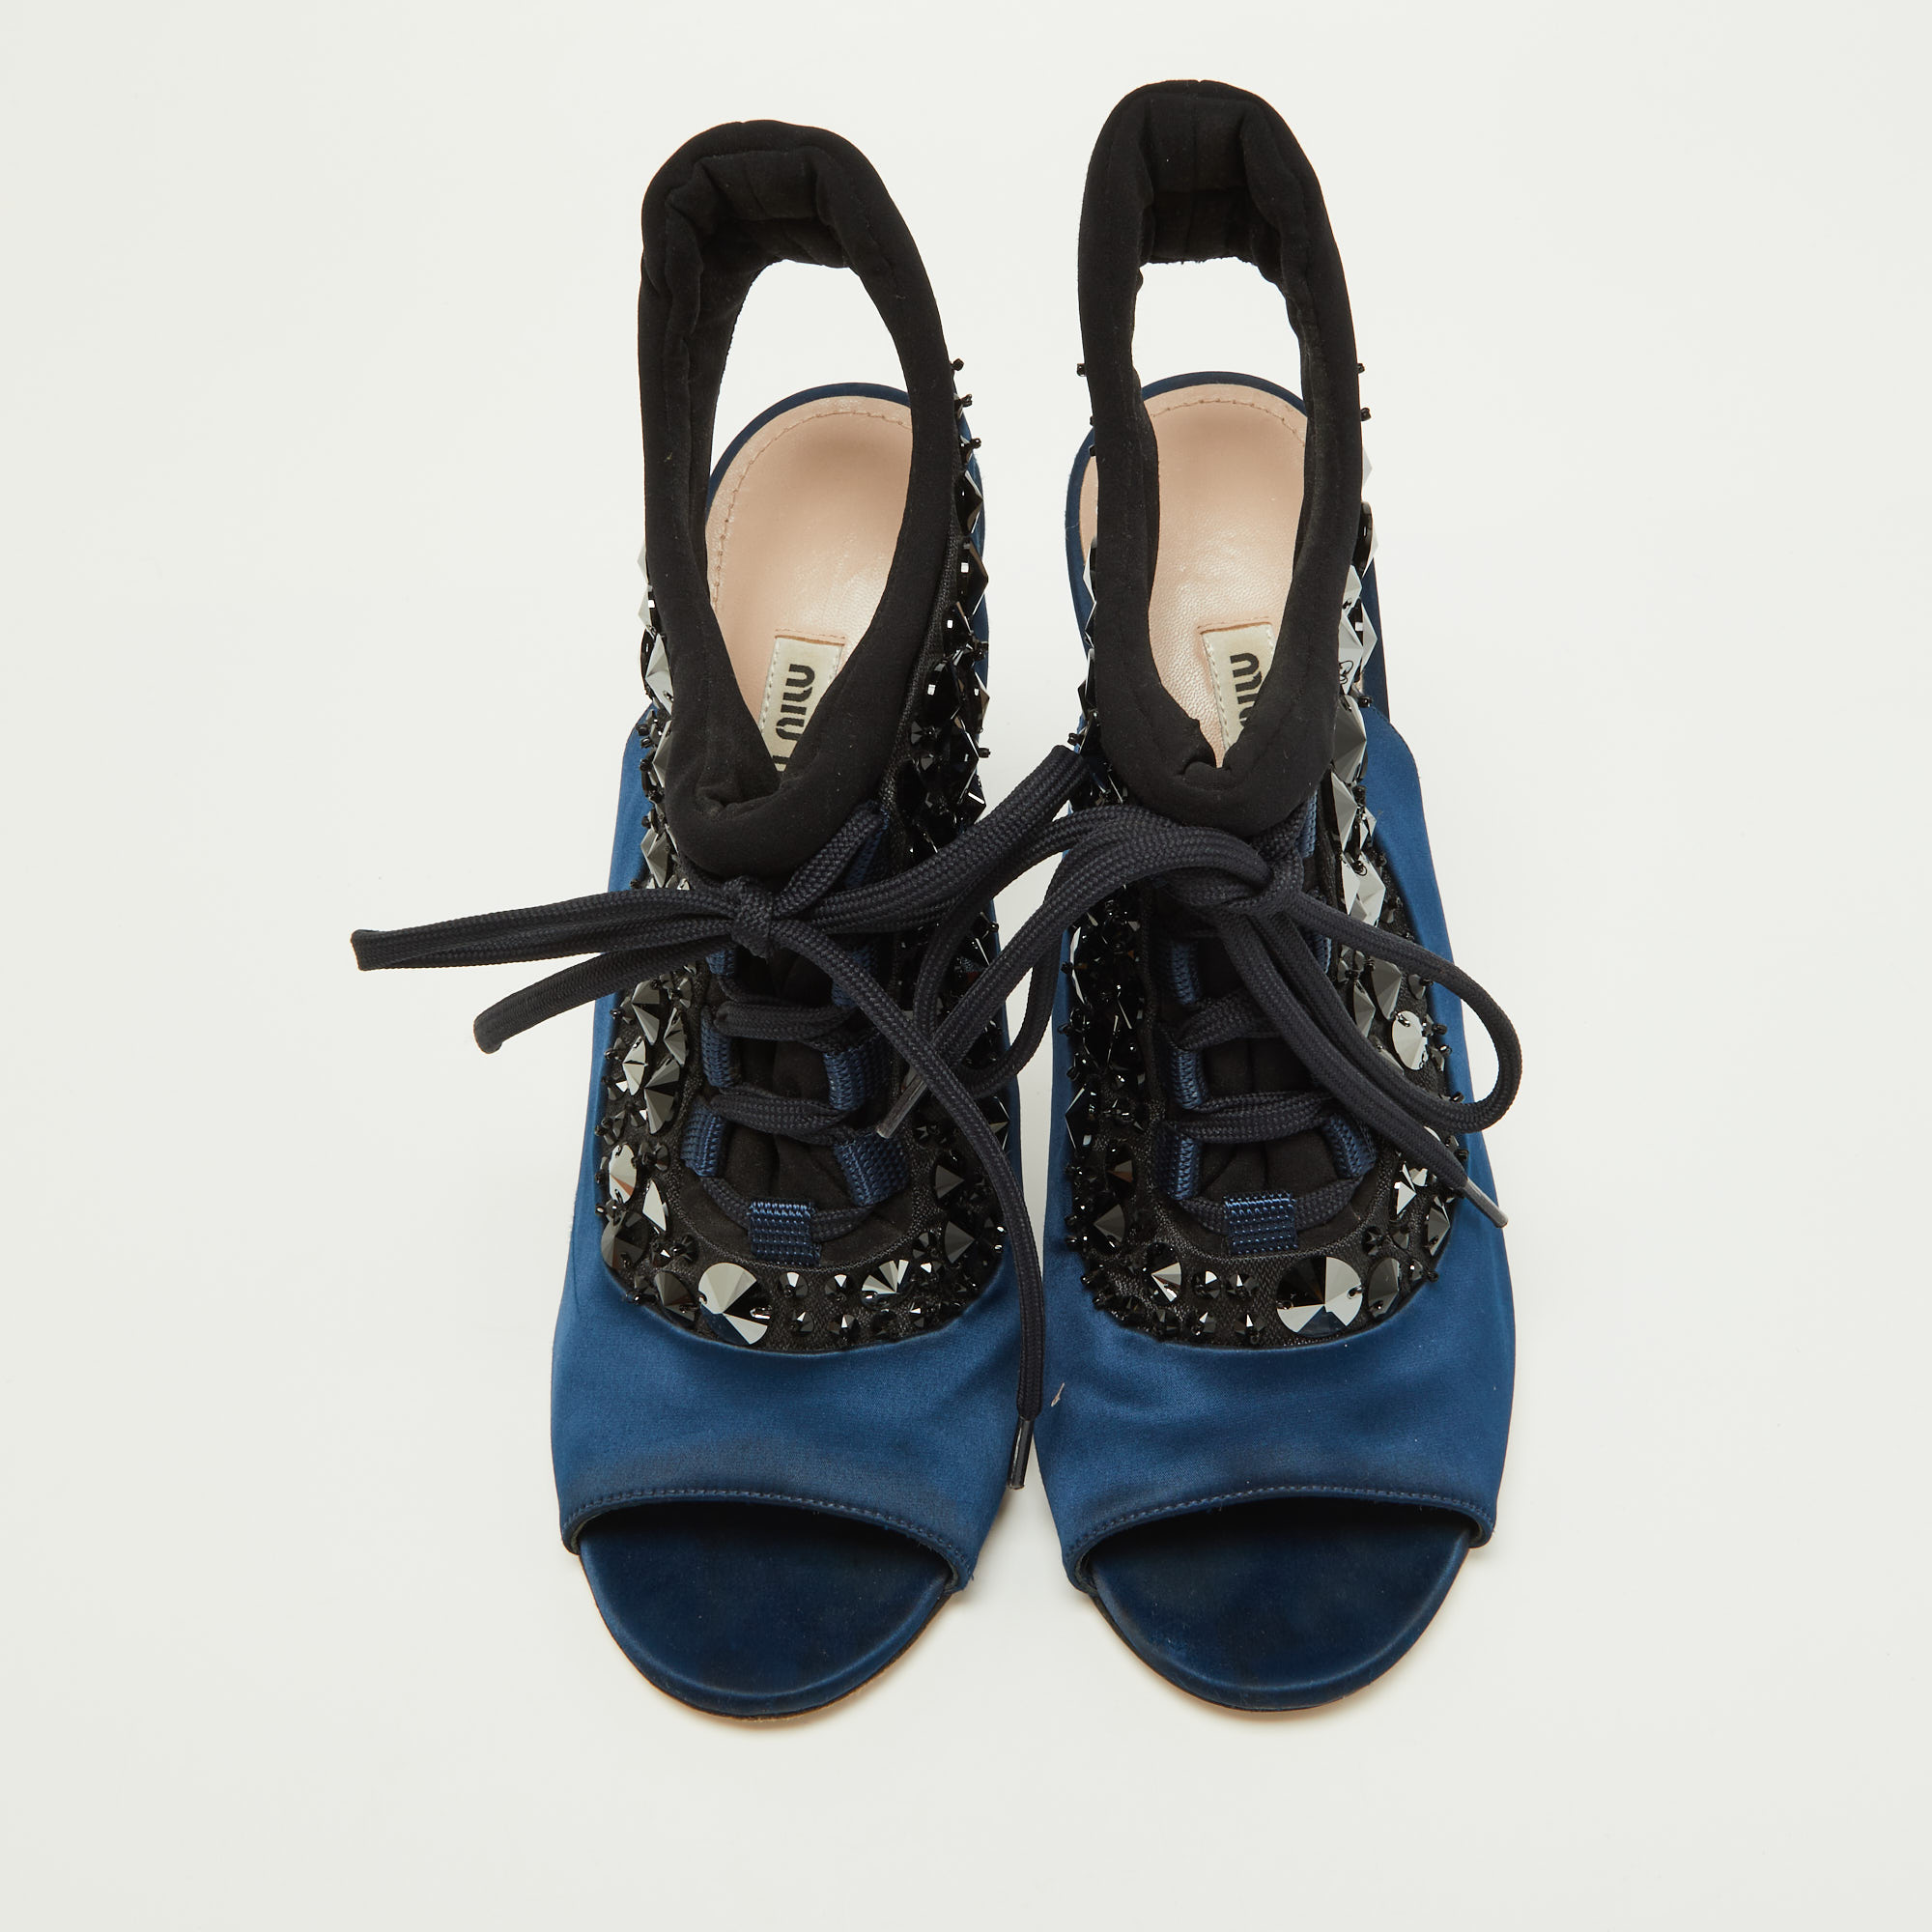 Miu Miu Navy Blue/Black Satin And Fabric Embellished Cutout Booties Size 39